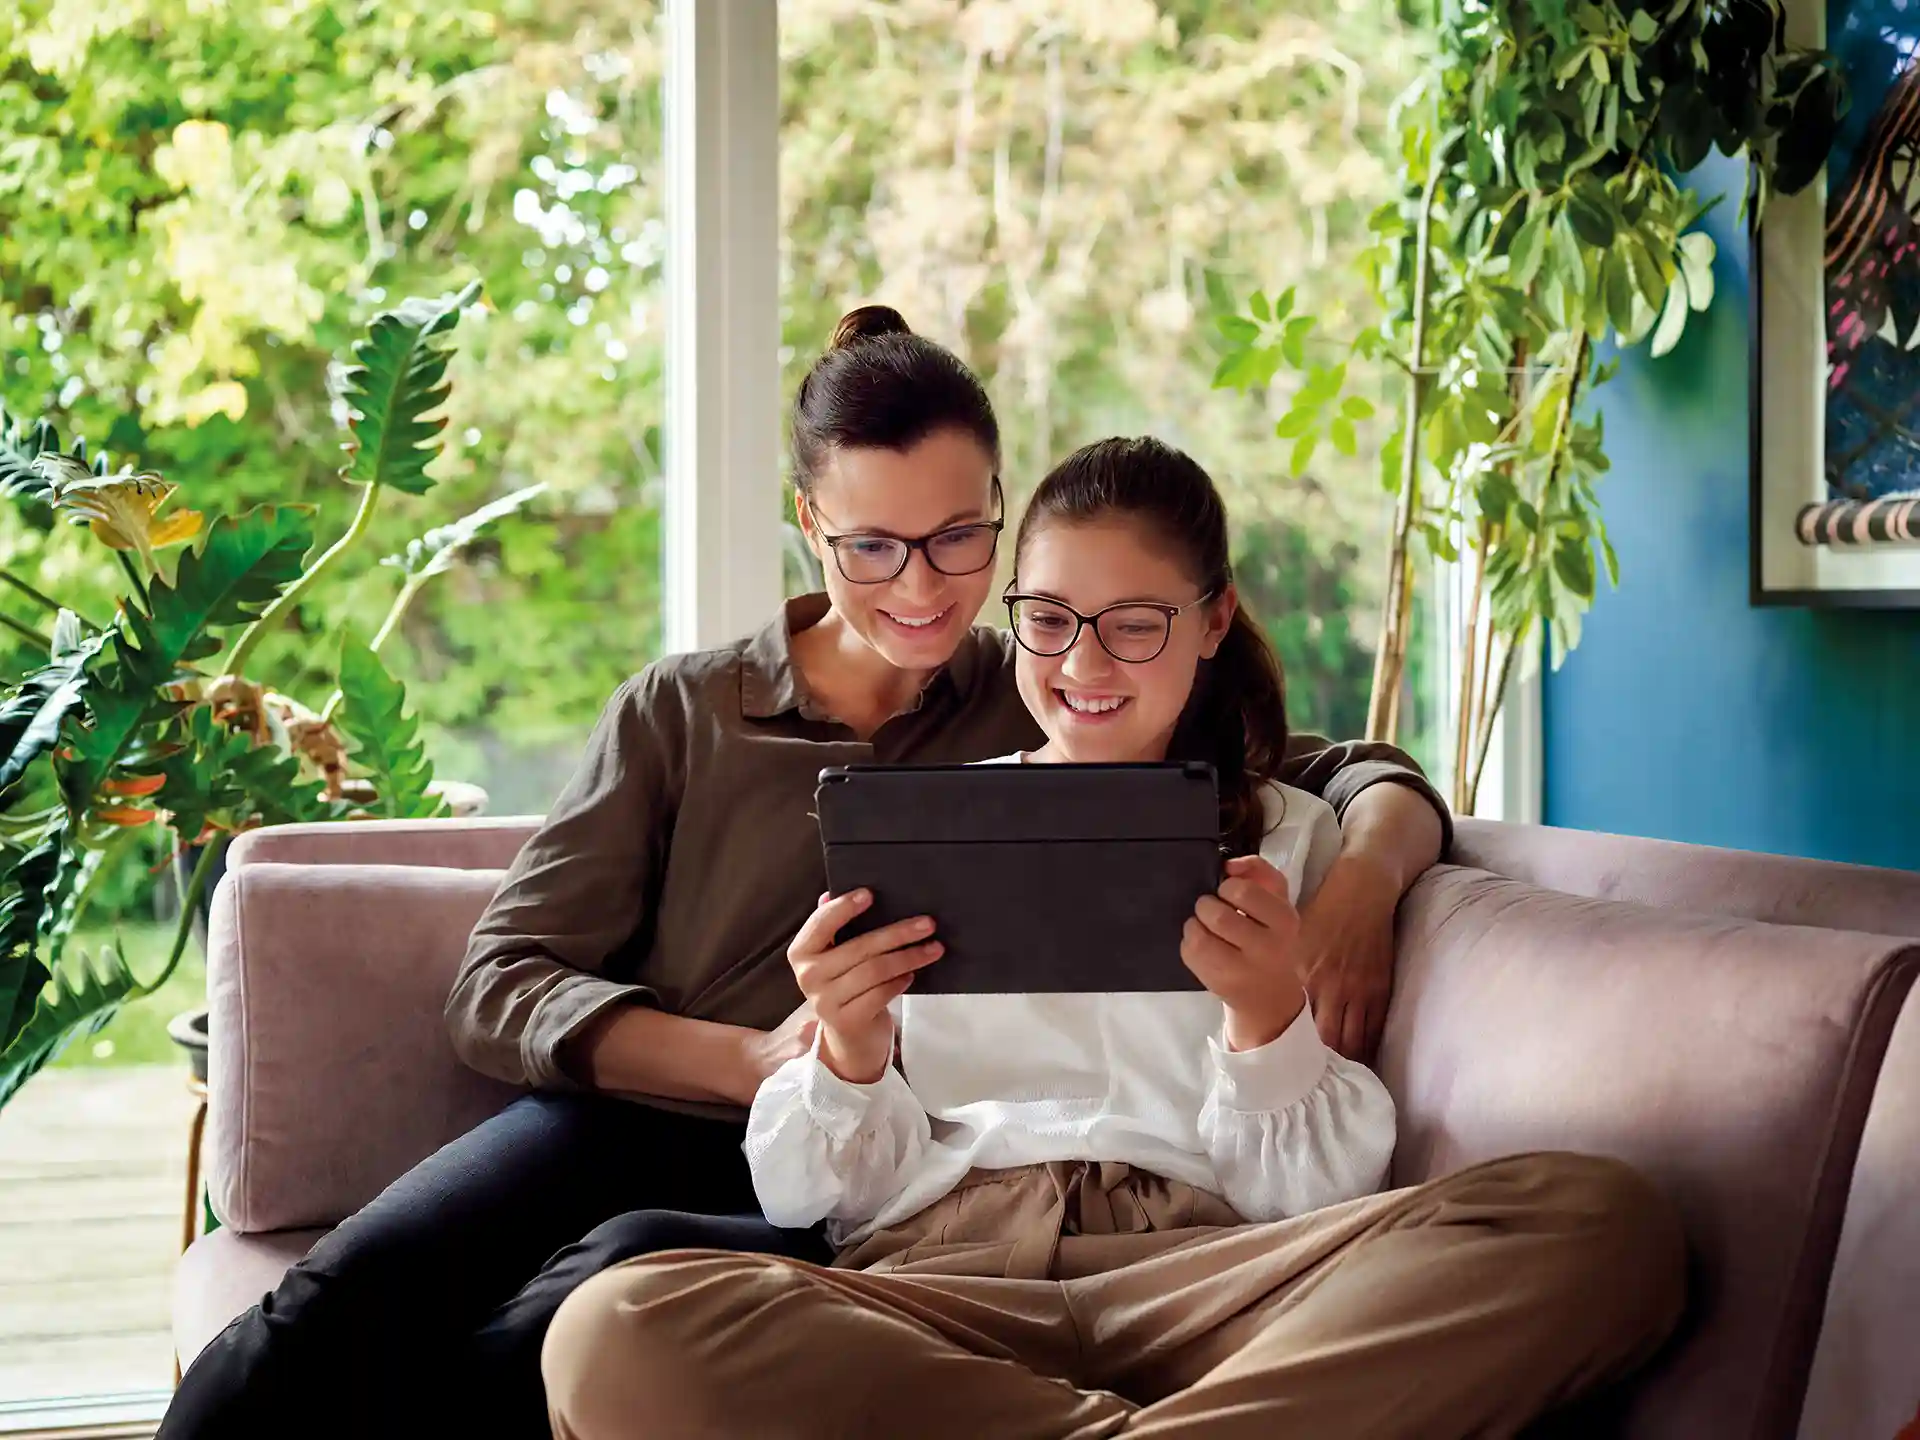 Frau mit Tochter sintzen auf einem Sofa und schauen gemeinsam auf ein Tablet